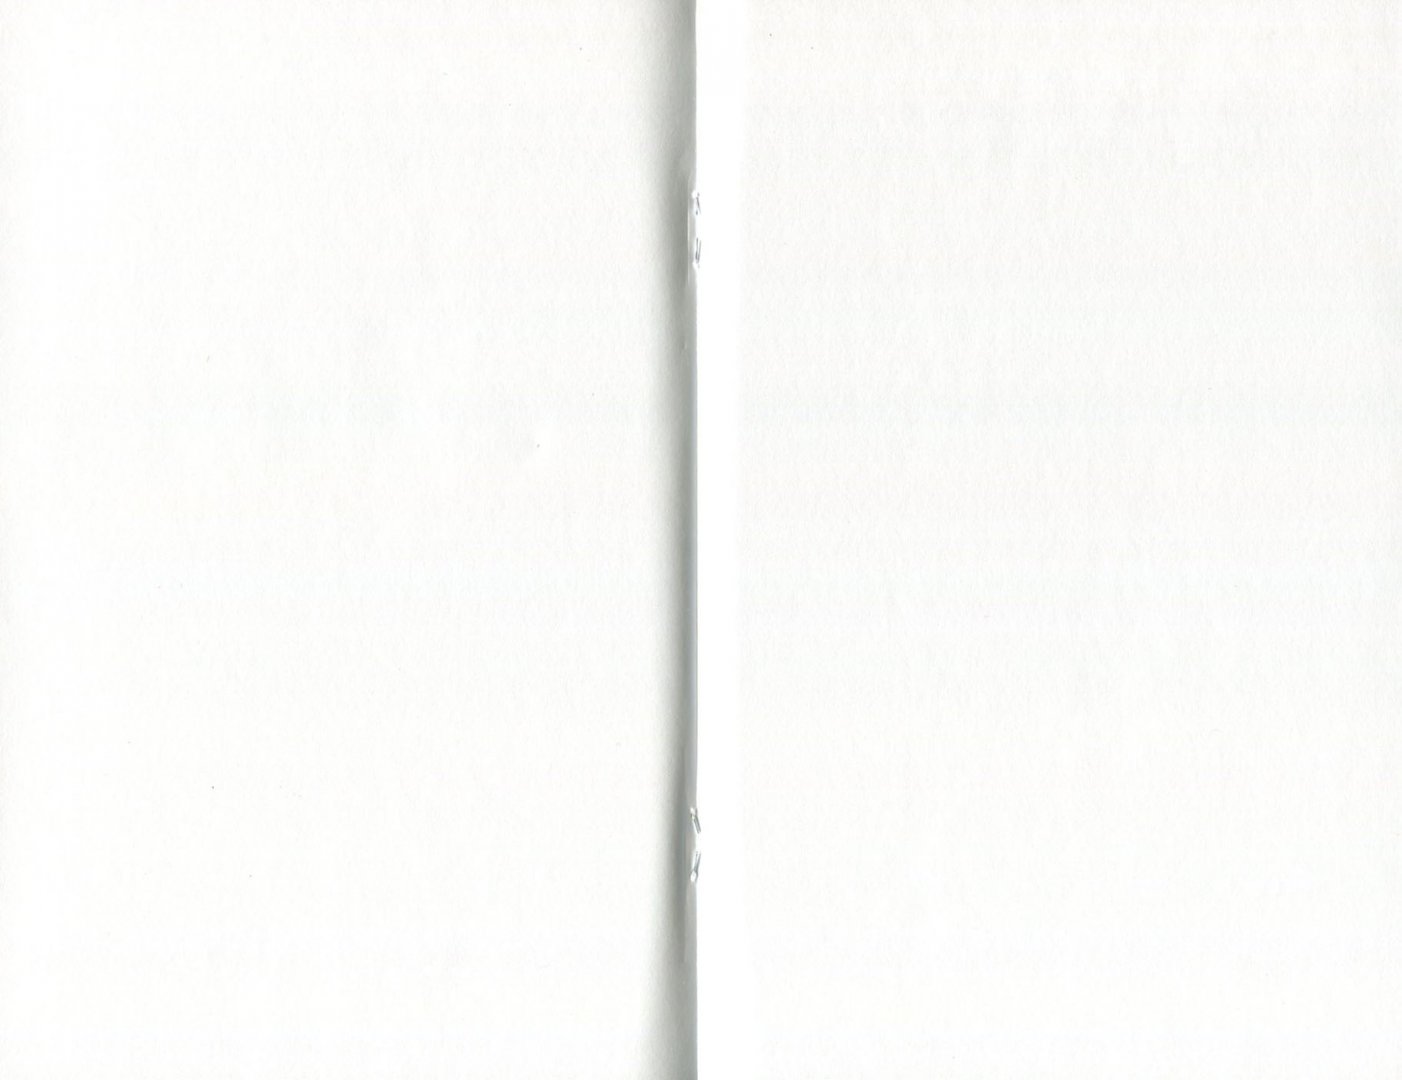 Иллюстрация 1 из 4 для Блокнот "Хаски" (нелинованный, 32 листа, А5) | Лабиринт - канцтовы. Источник: Лабиринт